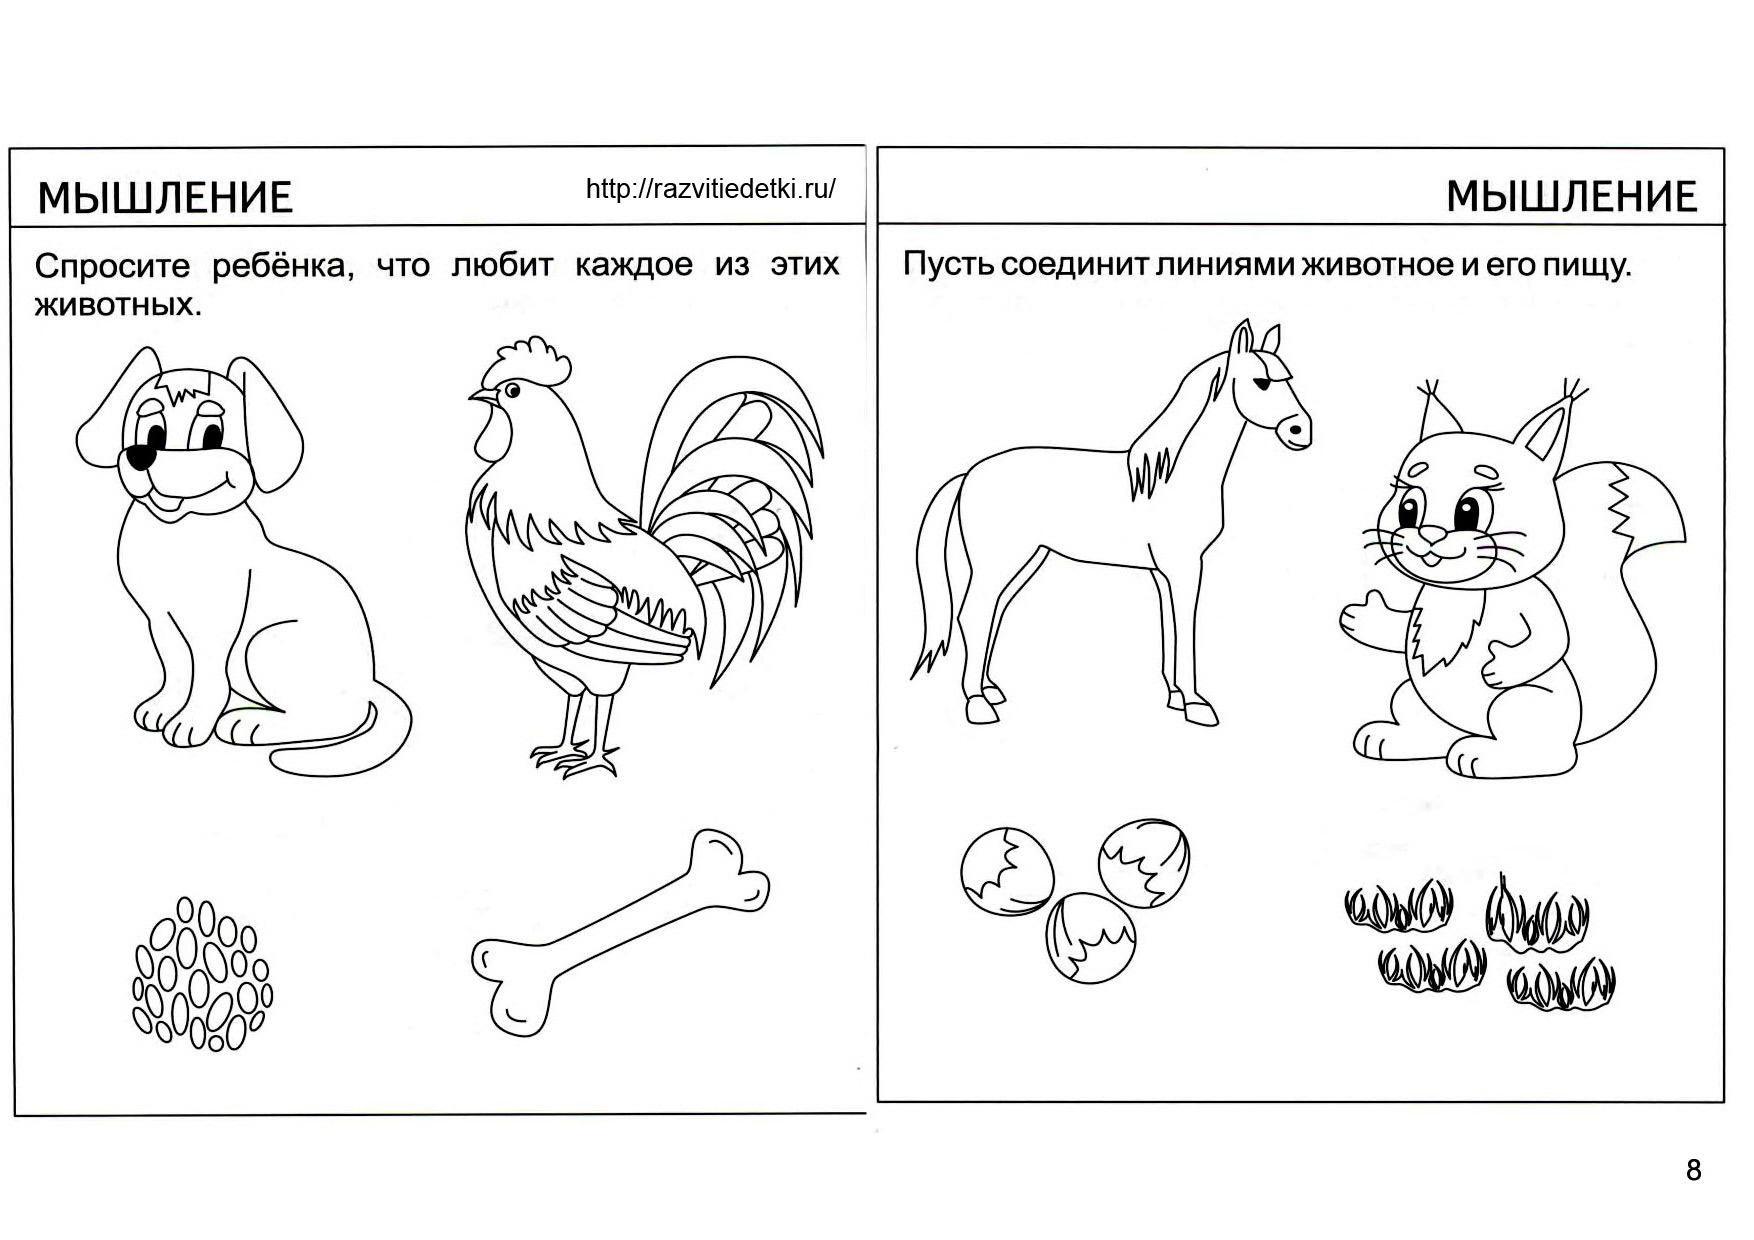 Домашние животные задания 3 4. Задания для дошкольников. Животные задания для дошкольников. Карточки с заданиями для малышей. Задания для младших дошкольников.